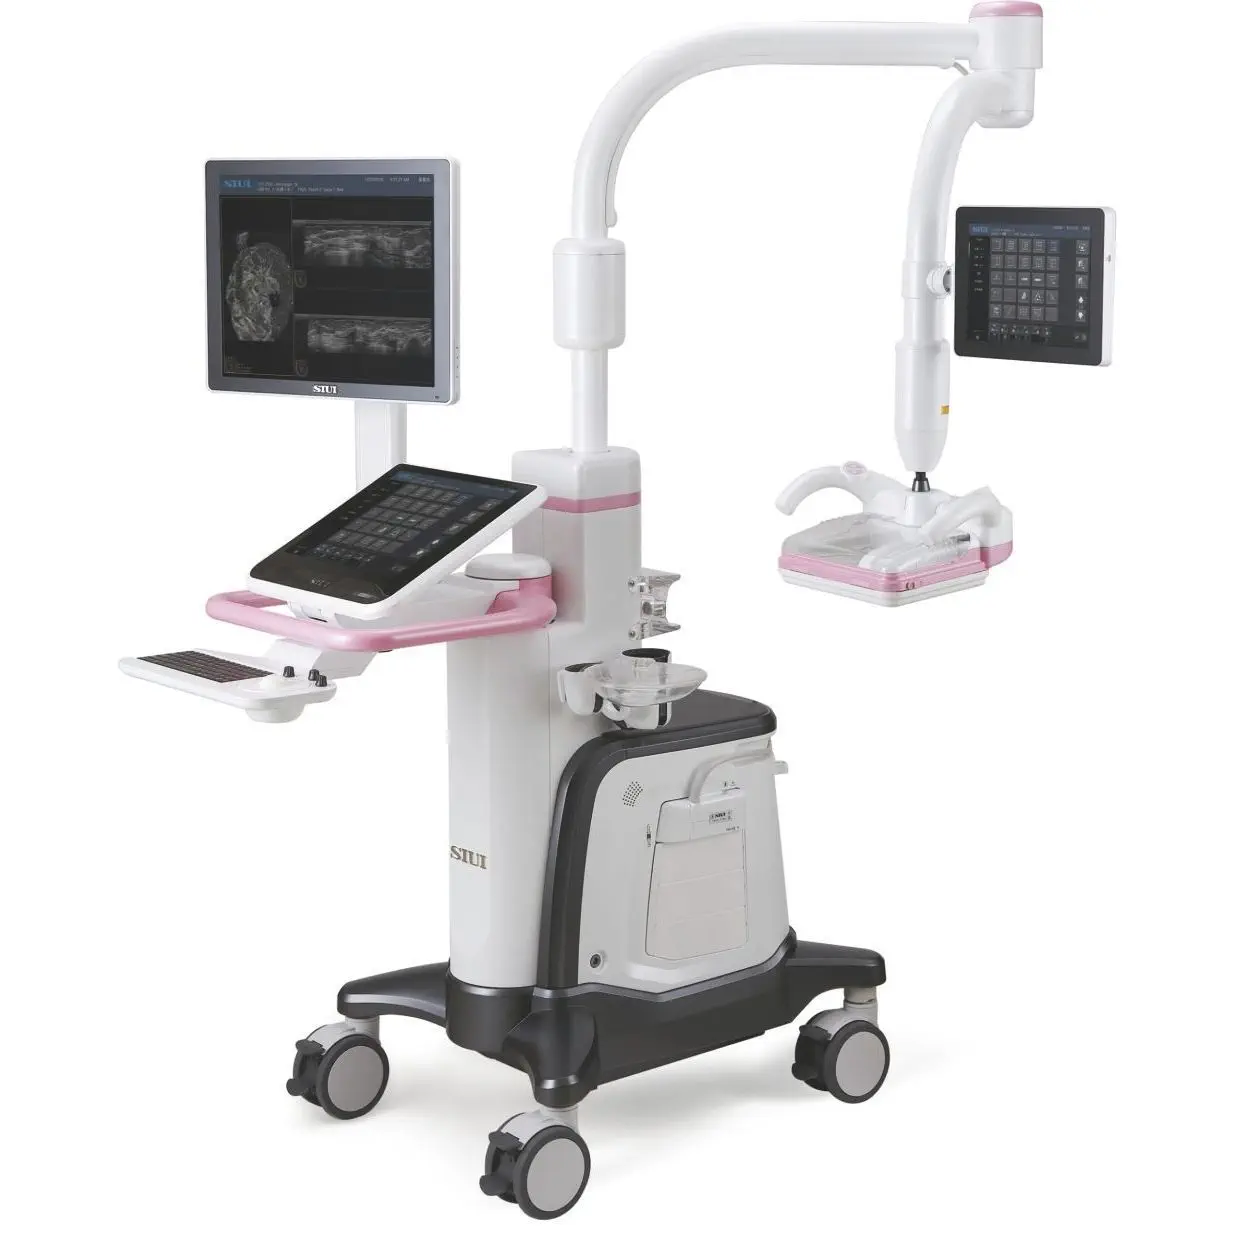 เครื่องตรวจอวัยวะภายในด้วยคลื่นเสียงความคมชัดสูง  On-platform ultrasound system IBUS 60  SIUI